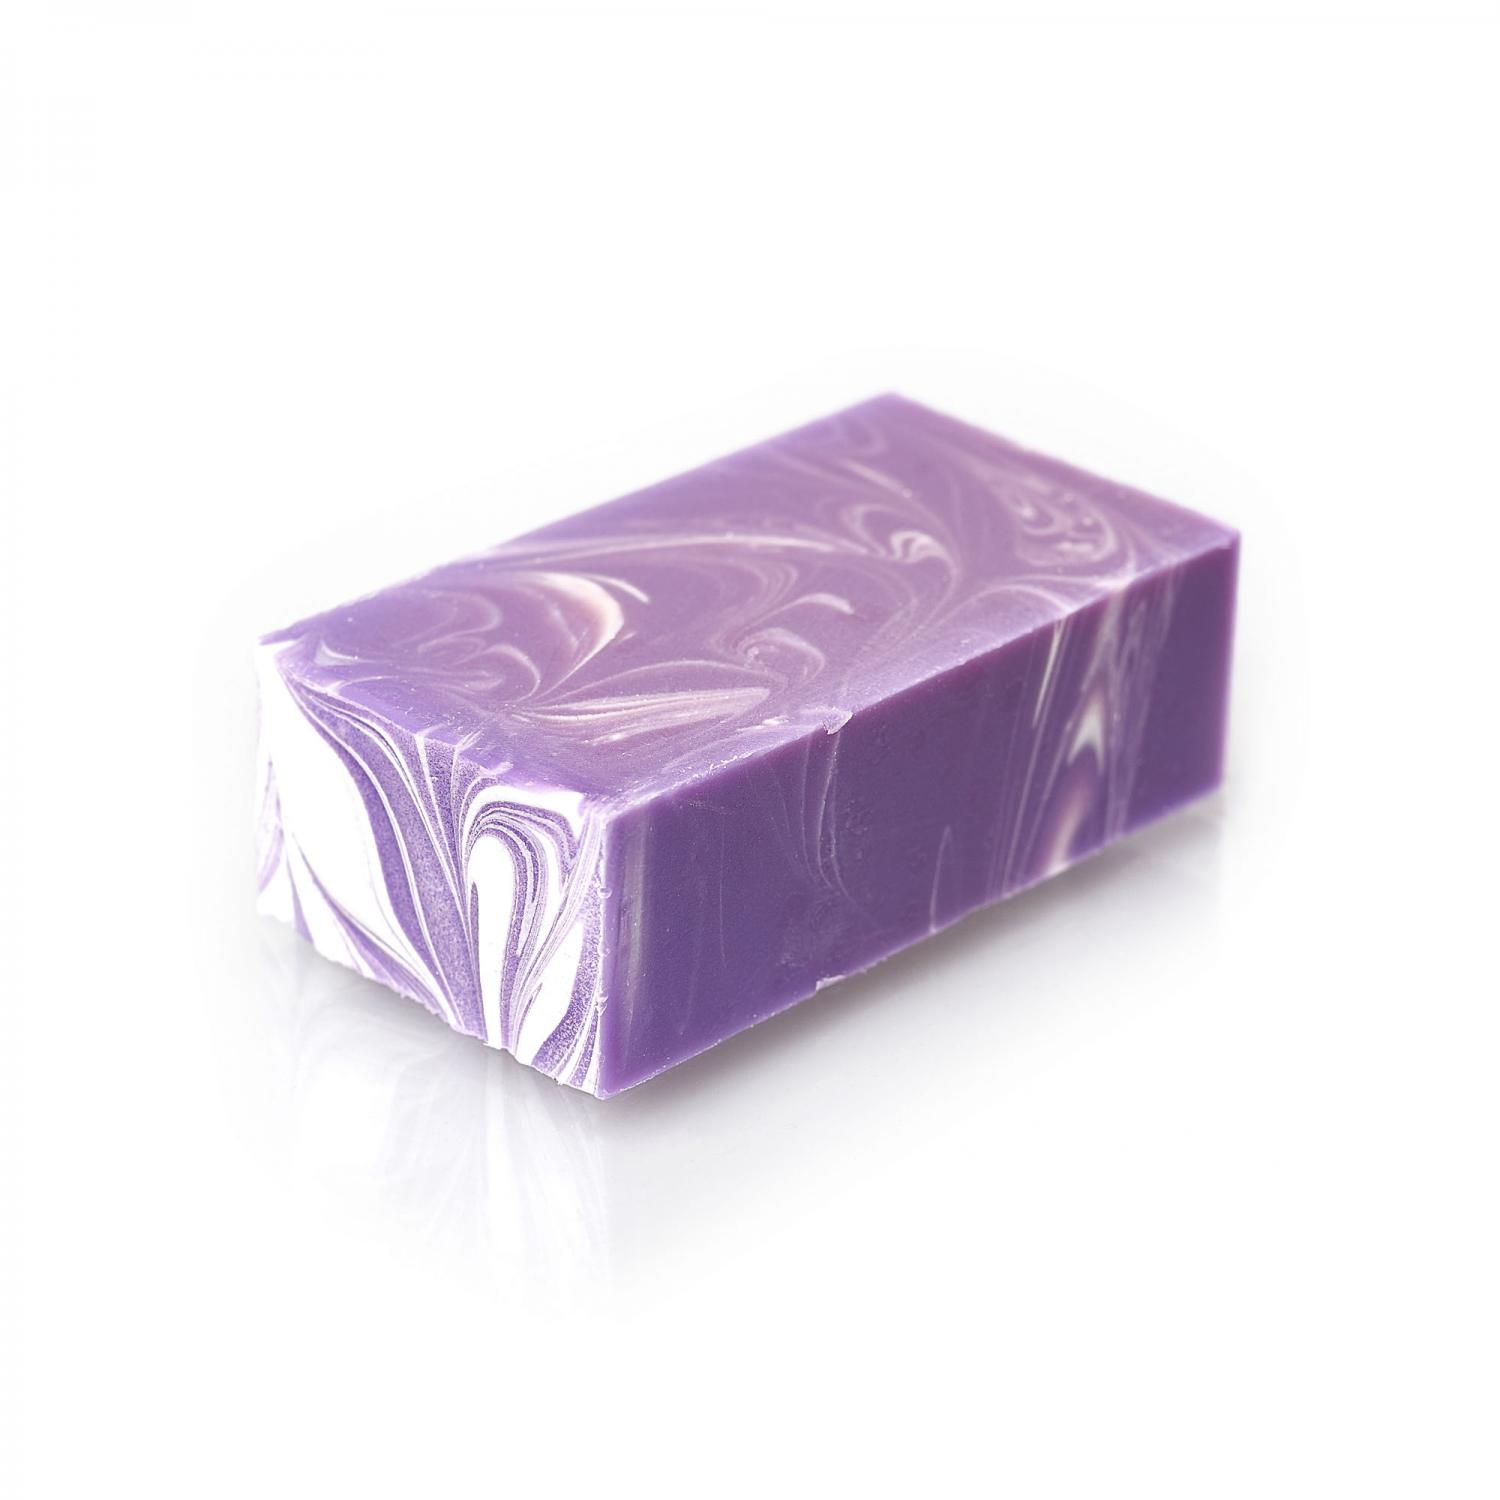 Lavendel tvål ca 160-170gr